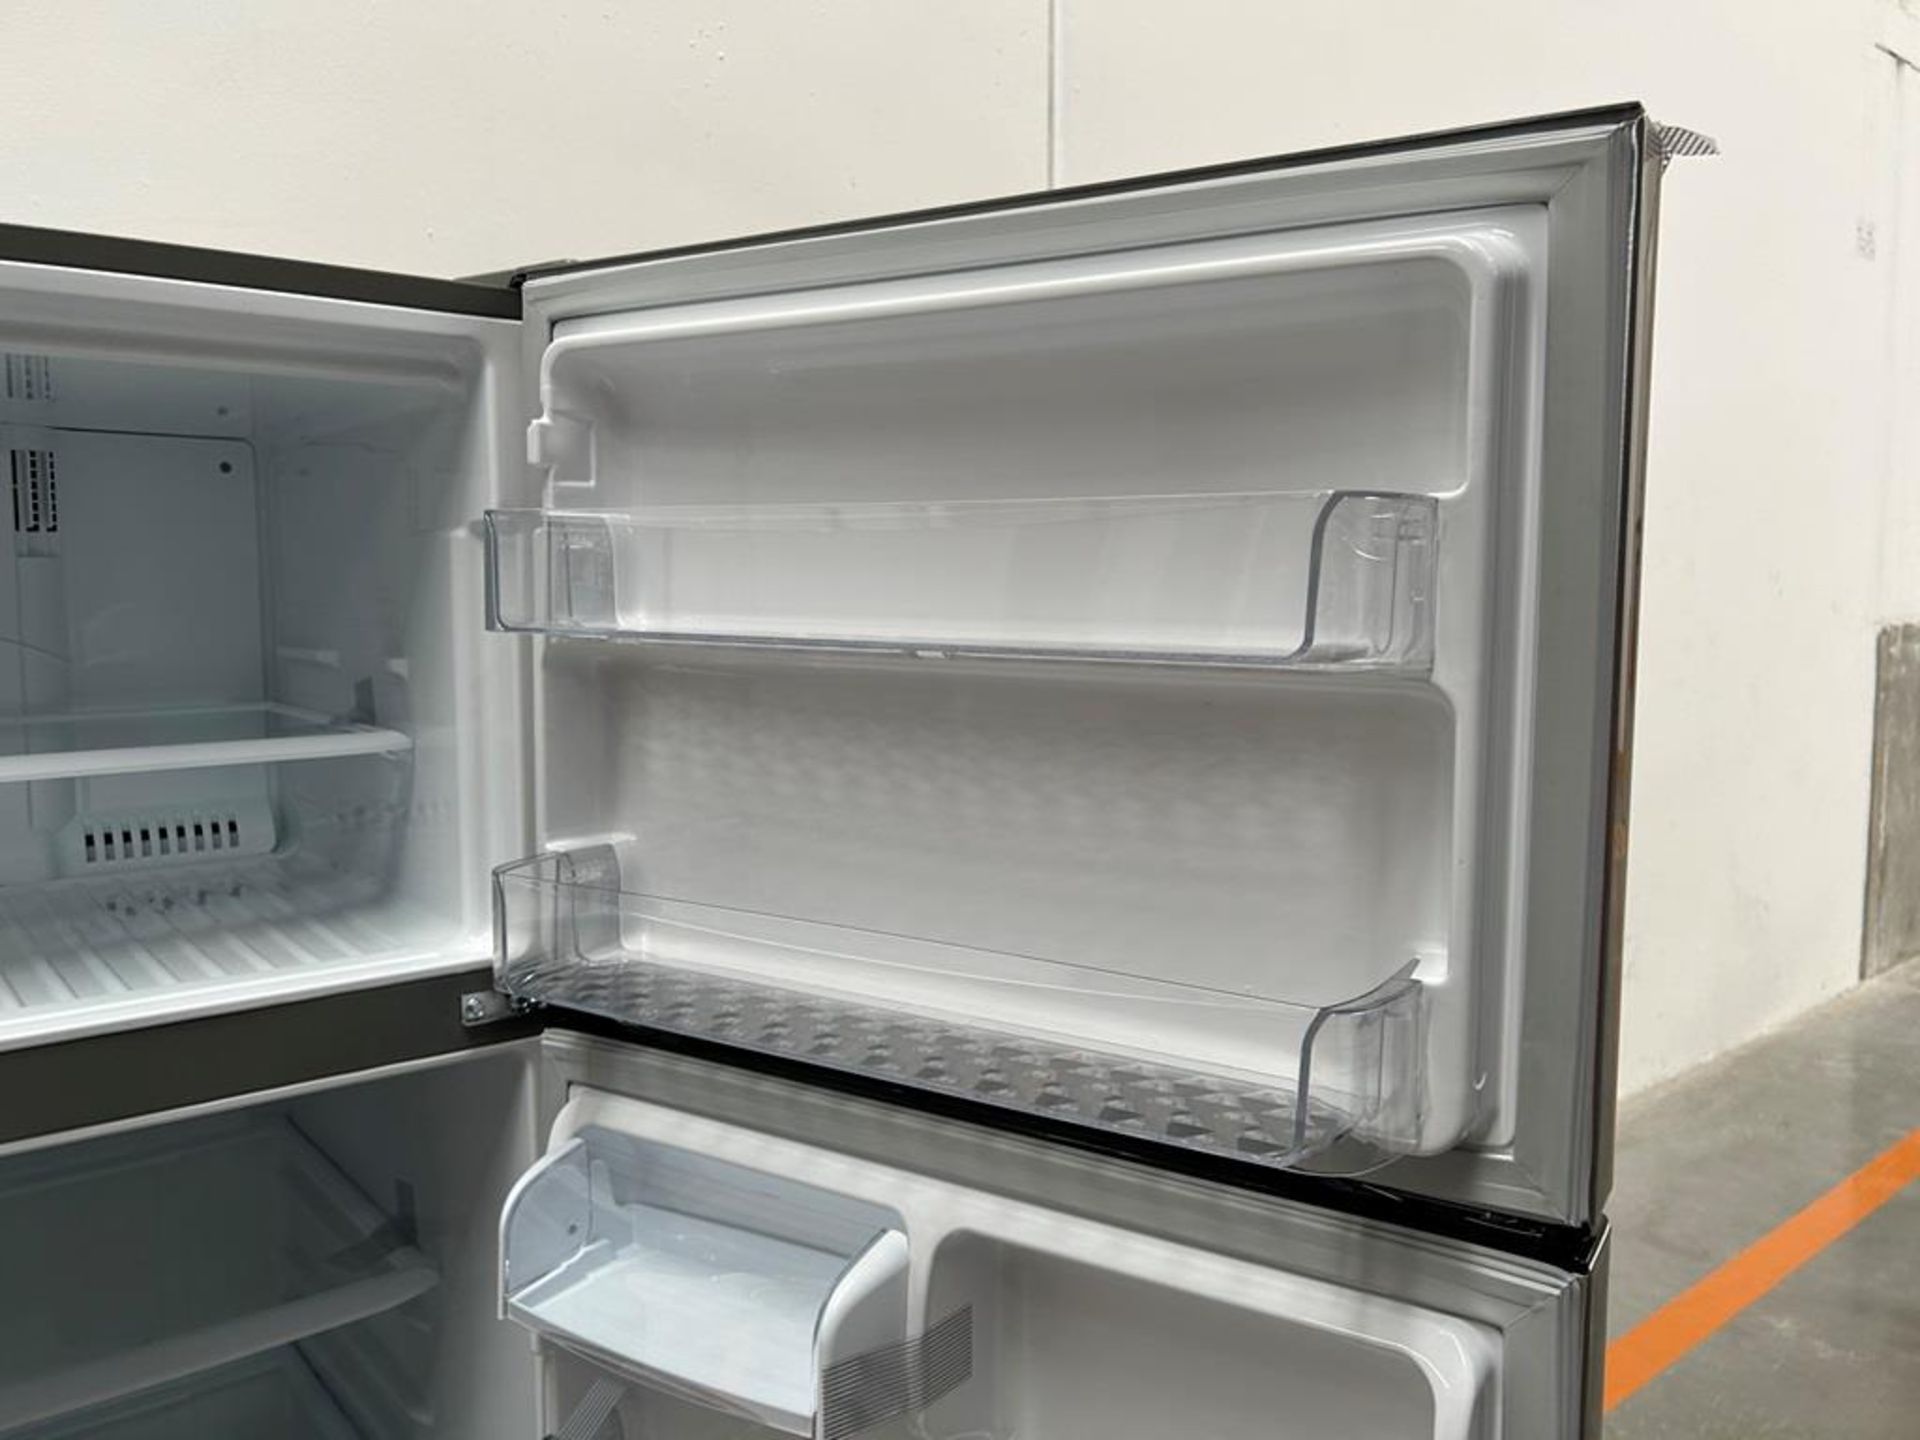 (NUEVO) Refrigerador Marca LG, Modelo LT57BPSX, Serie 1U863, Color GRIS - Image 7 of 11